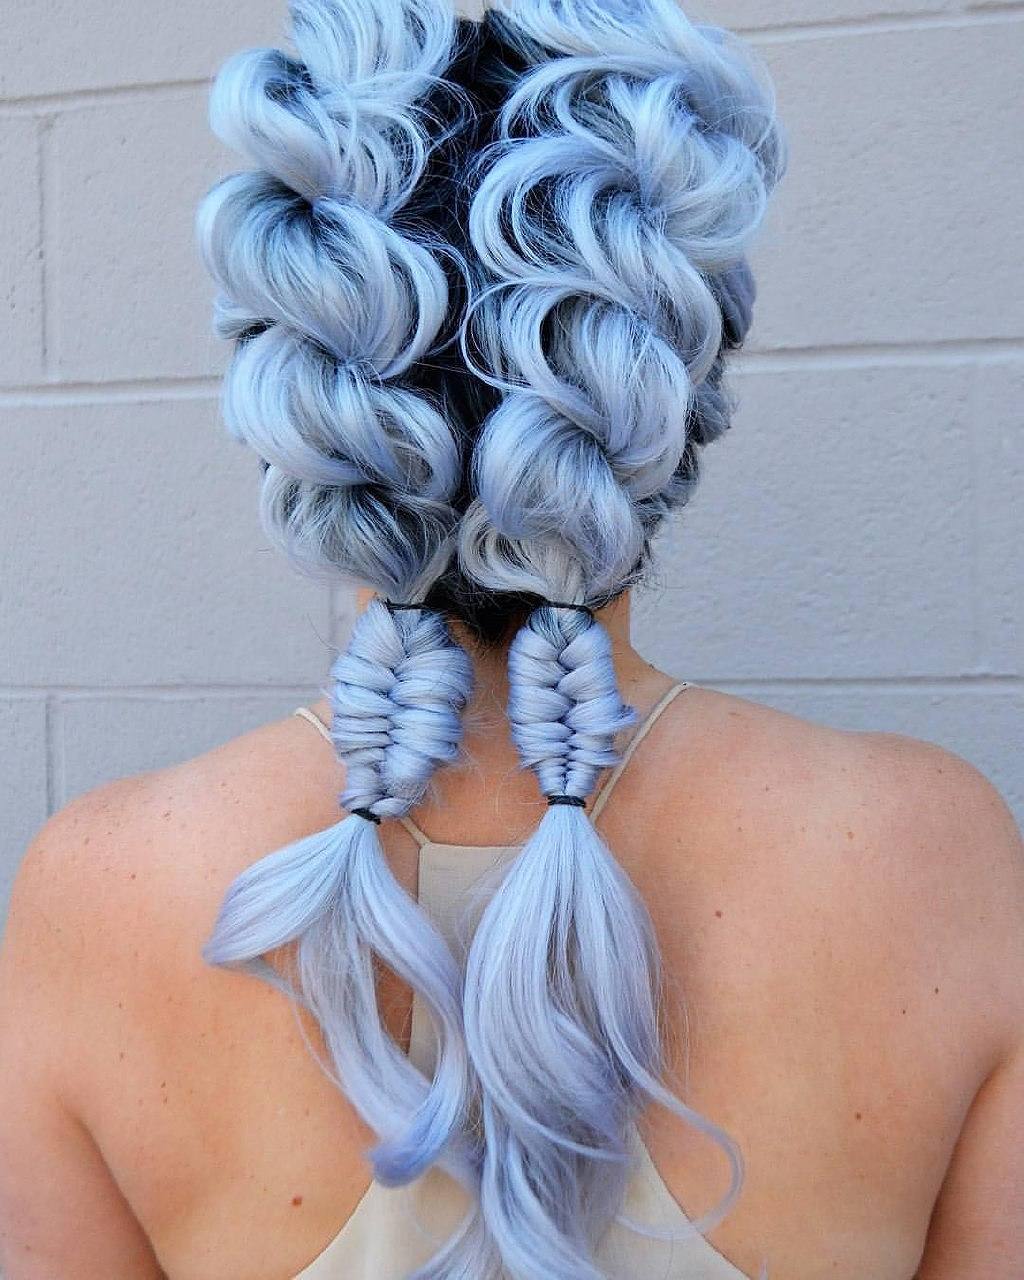 Varie trecce su capelli azzurri